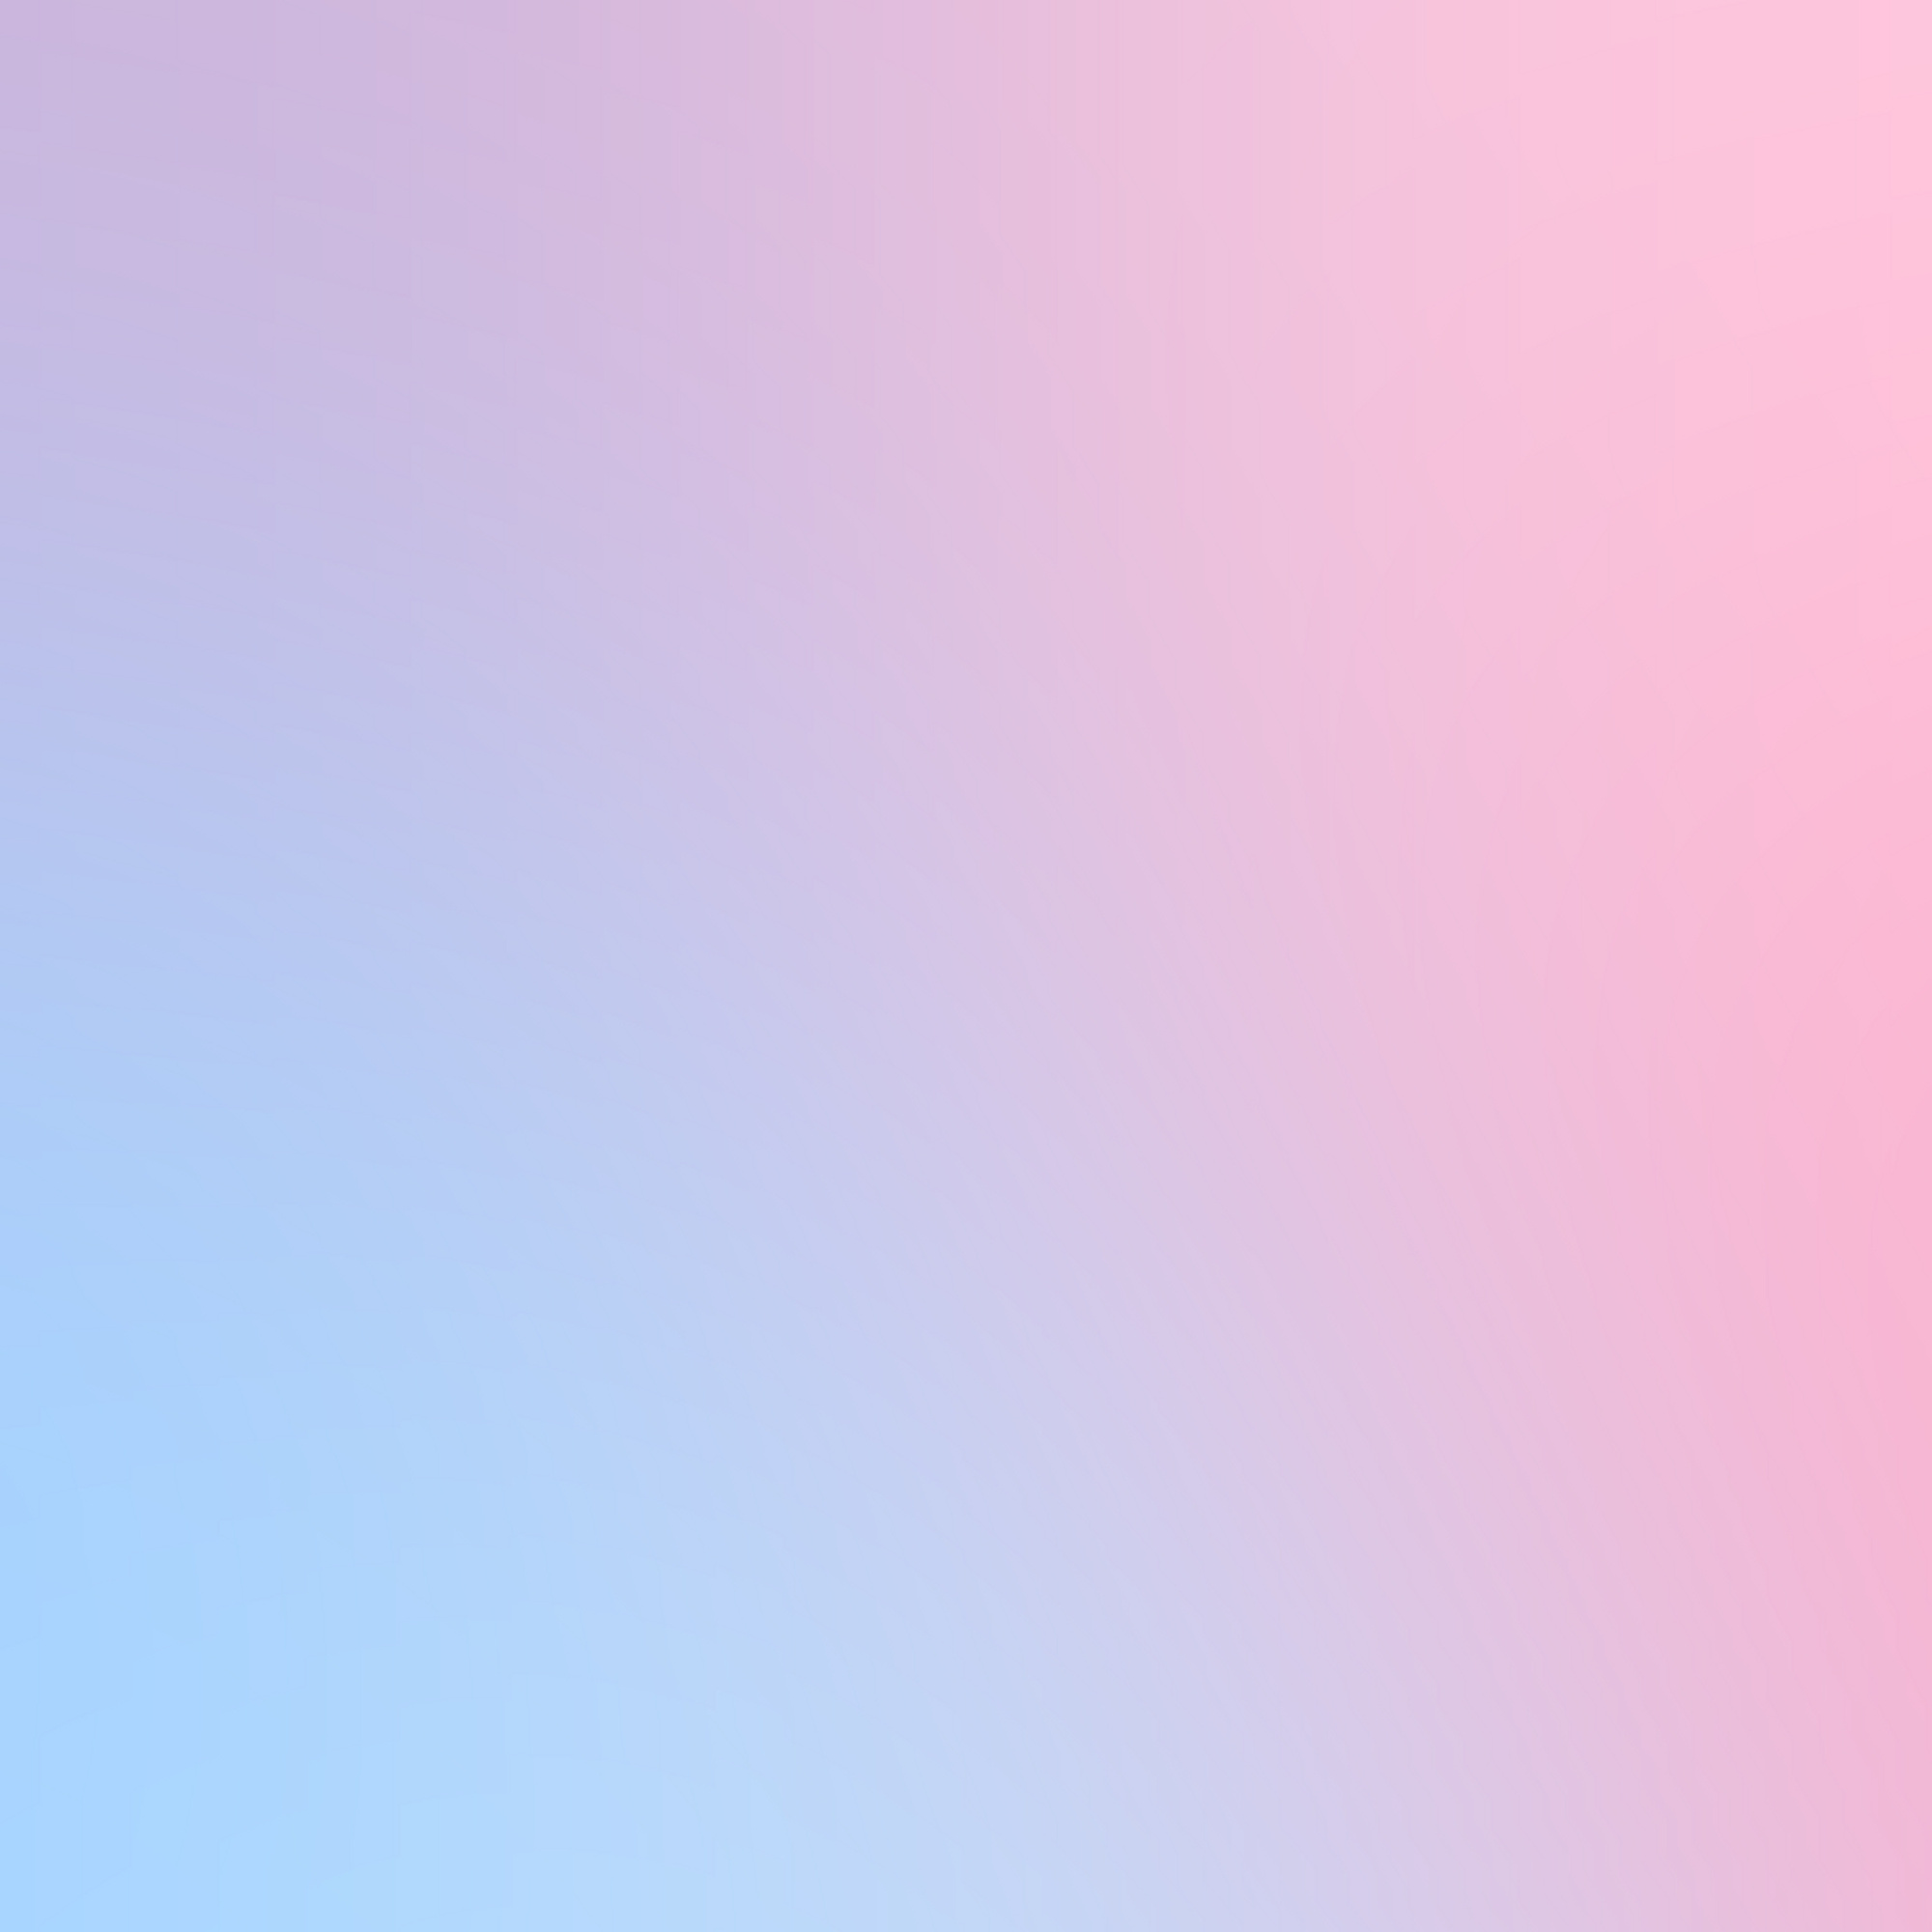 Blurred gradient background element